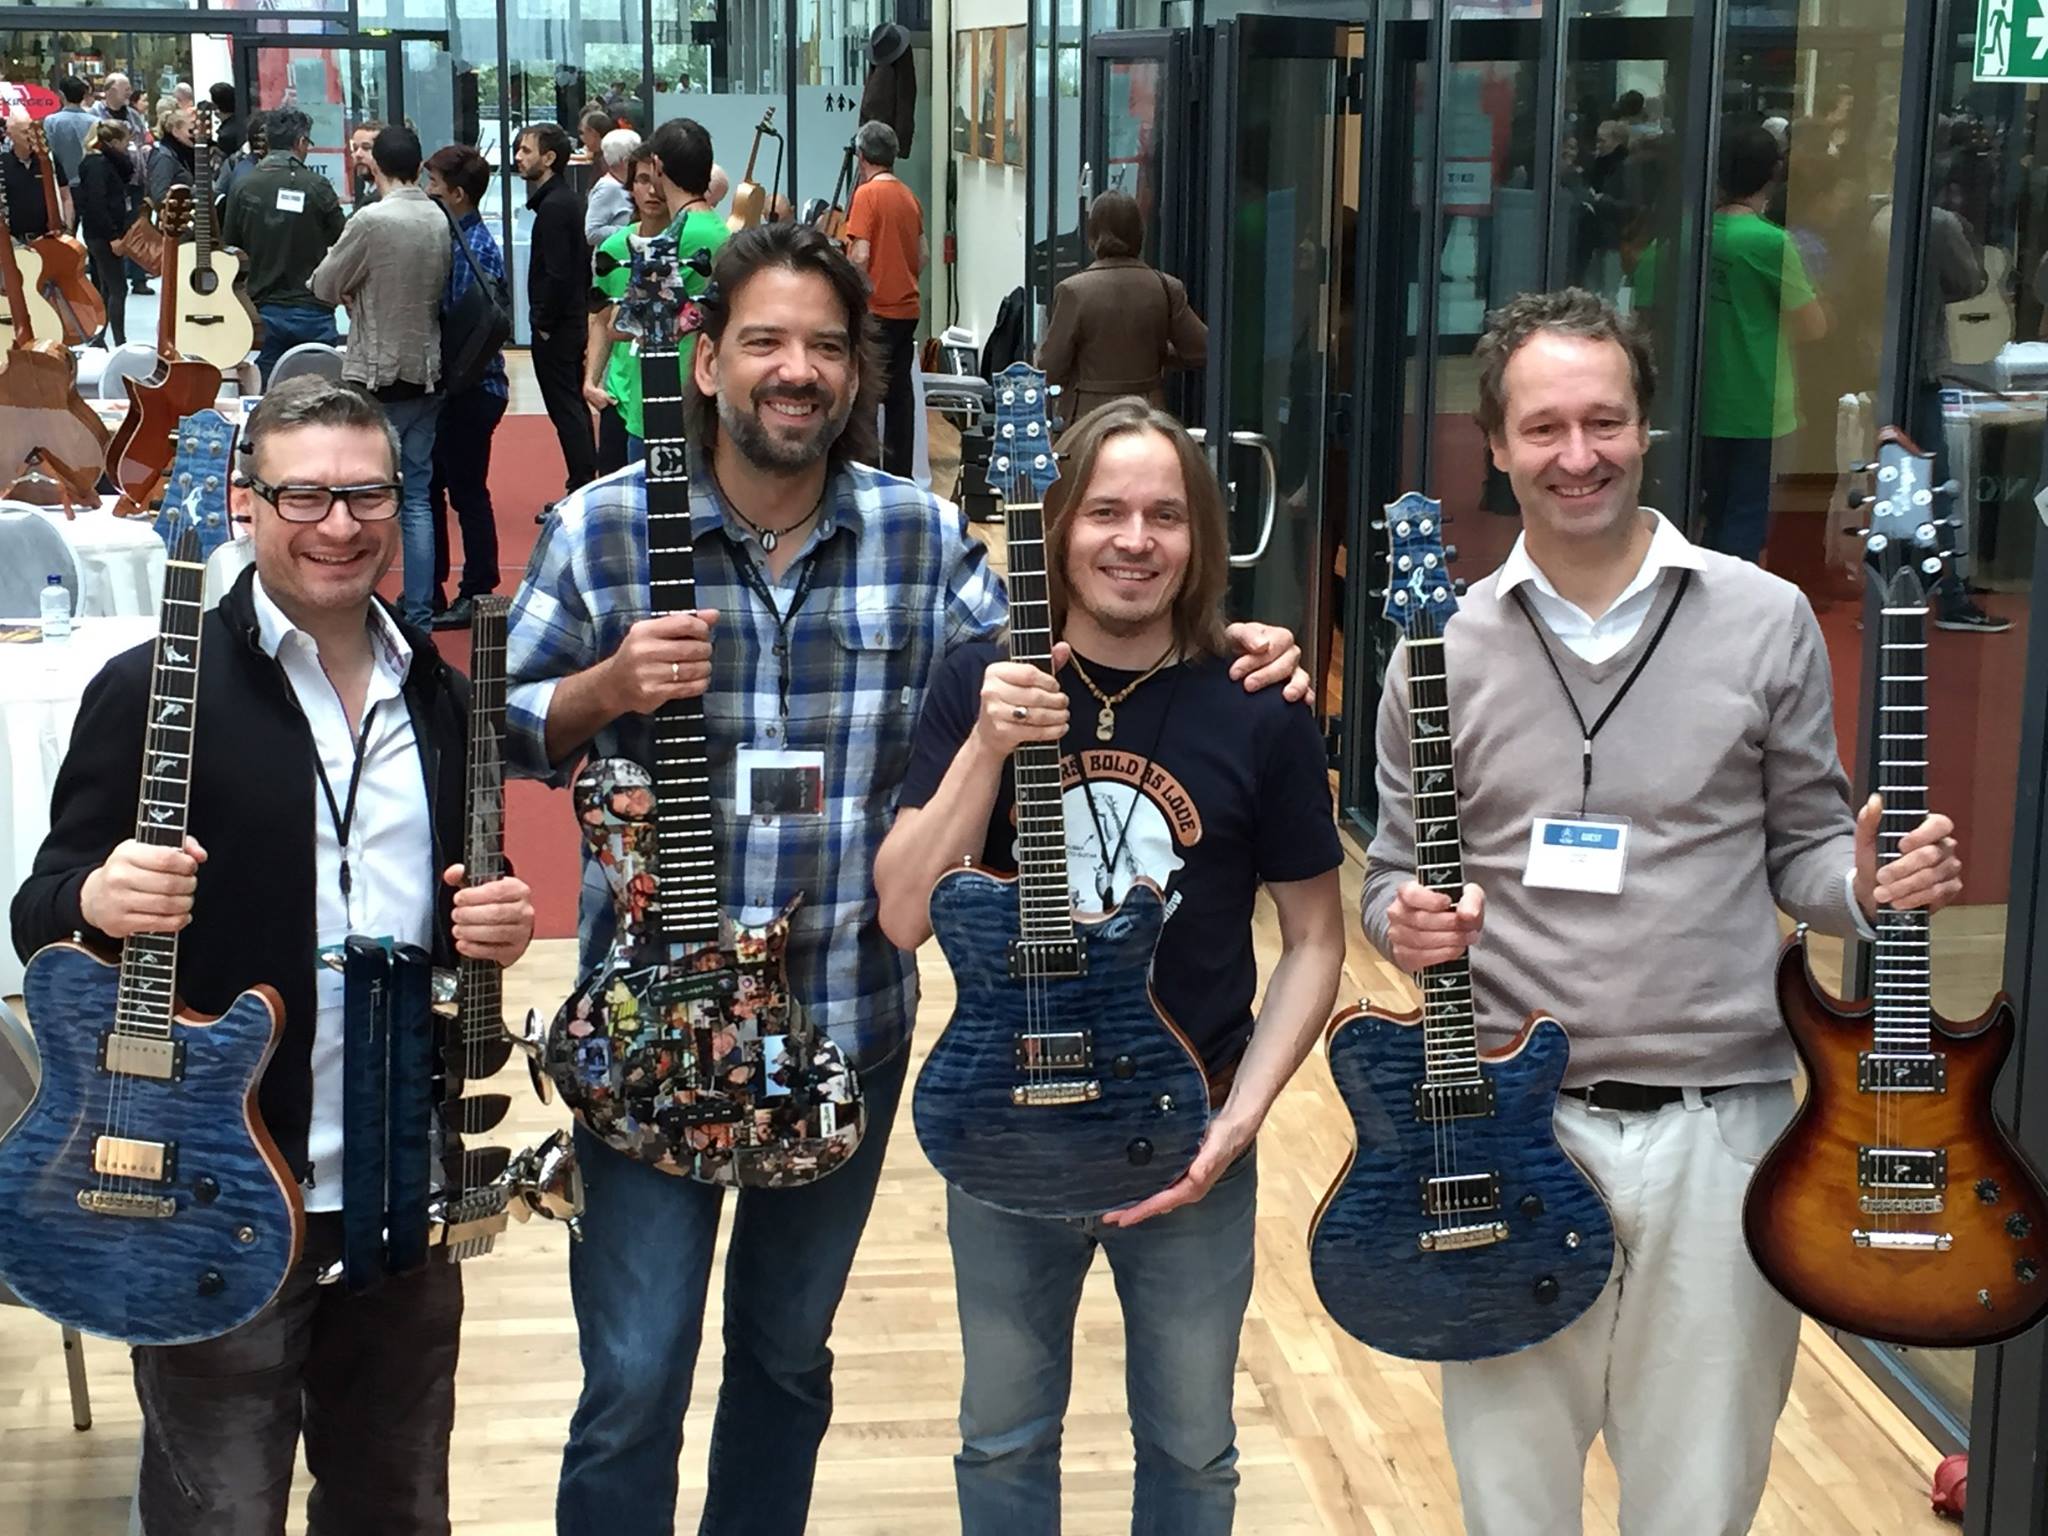 v.l. Jens Ritter, Nik Huber Juha Ruokangas und Ulrich Teuffel bei The Holy Grail Guitar Show 2016